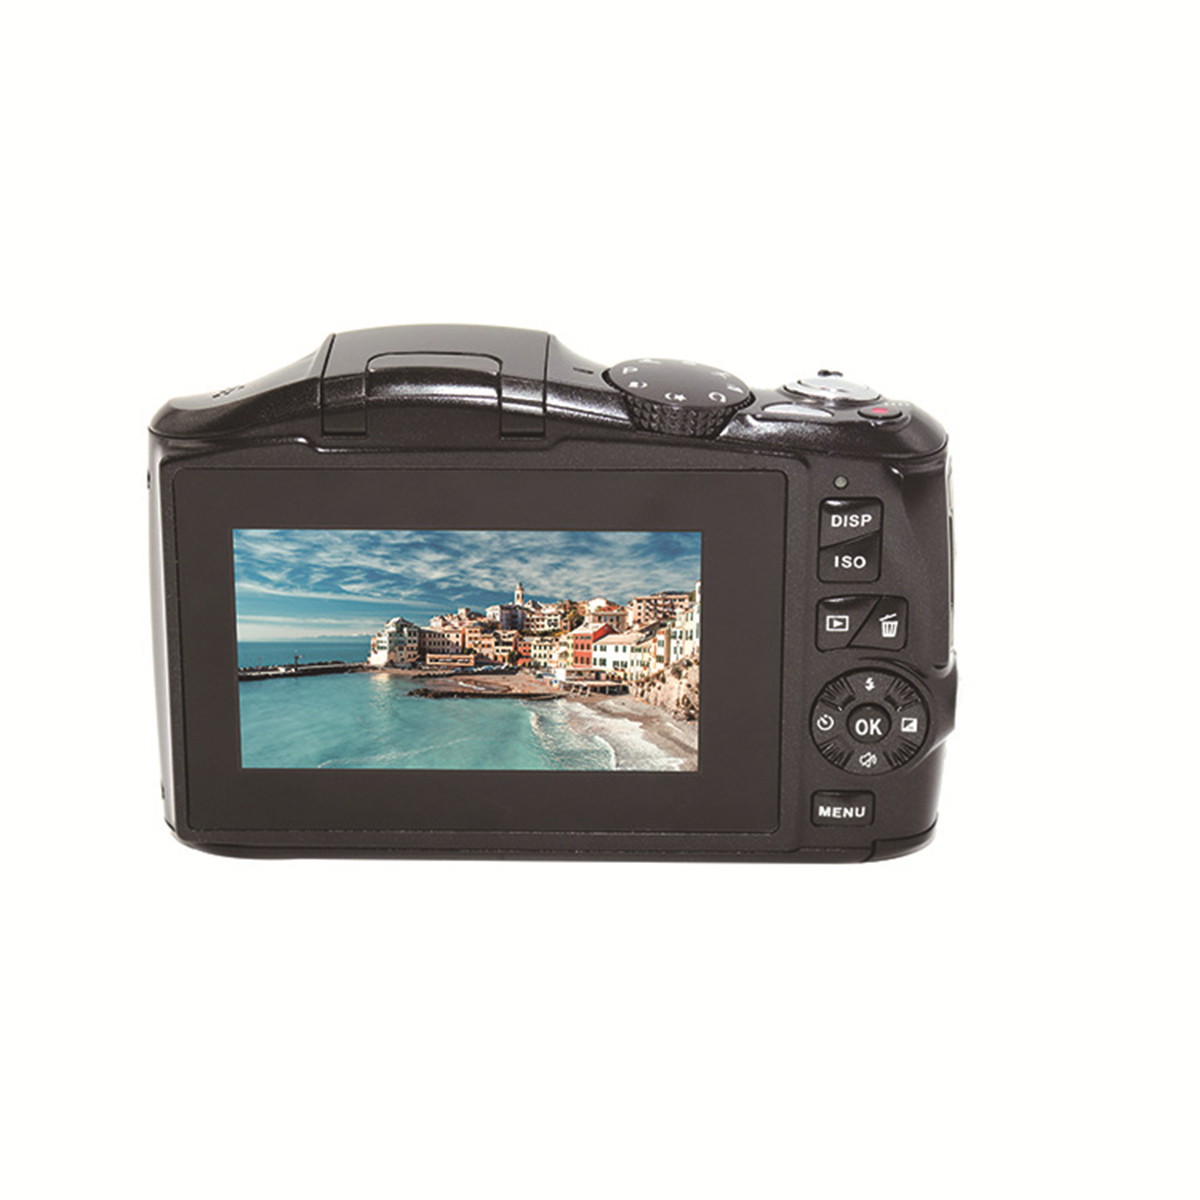 AMKOV-CD-R6S-27K-48MP-Mirrorless-Camera-Digital-Camcorder-4X-ZOOM-Video-Camera-1909300-14